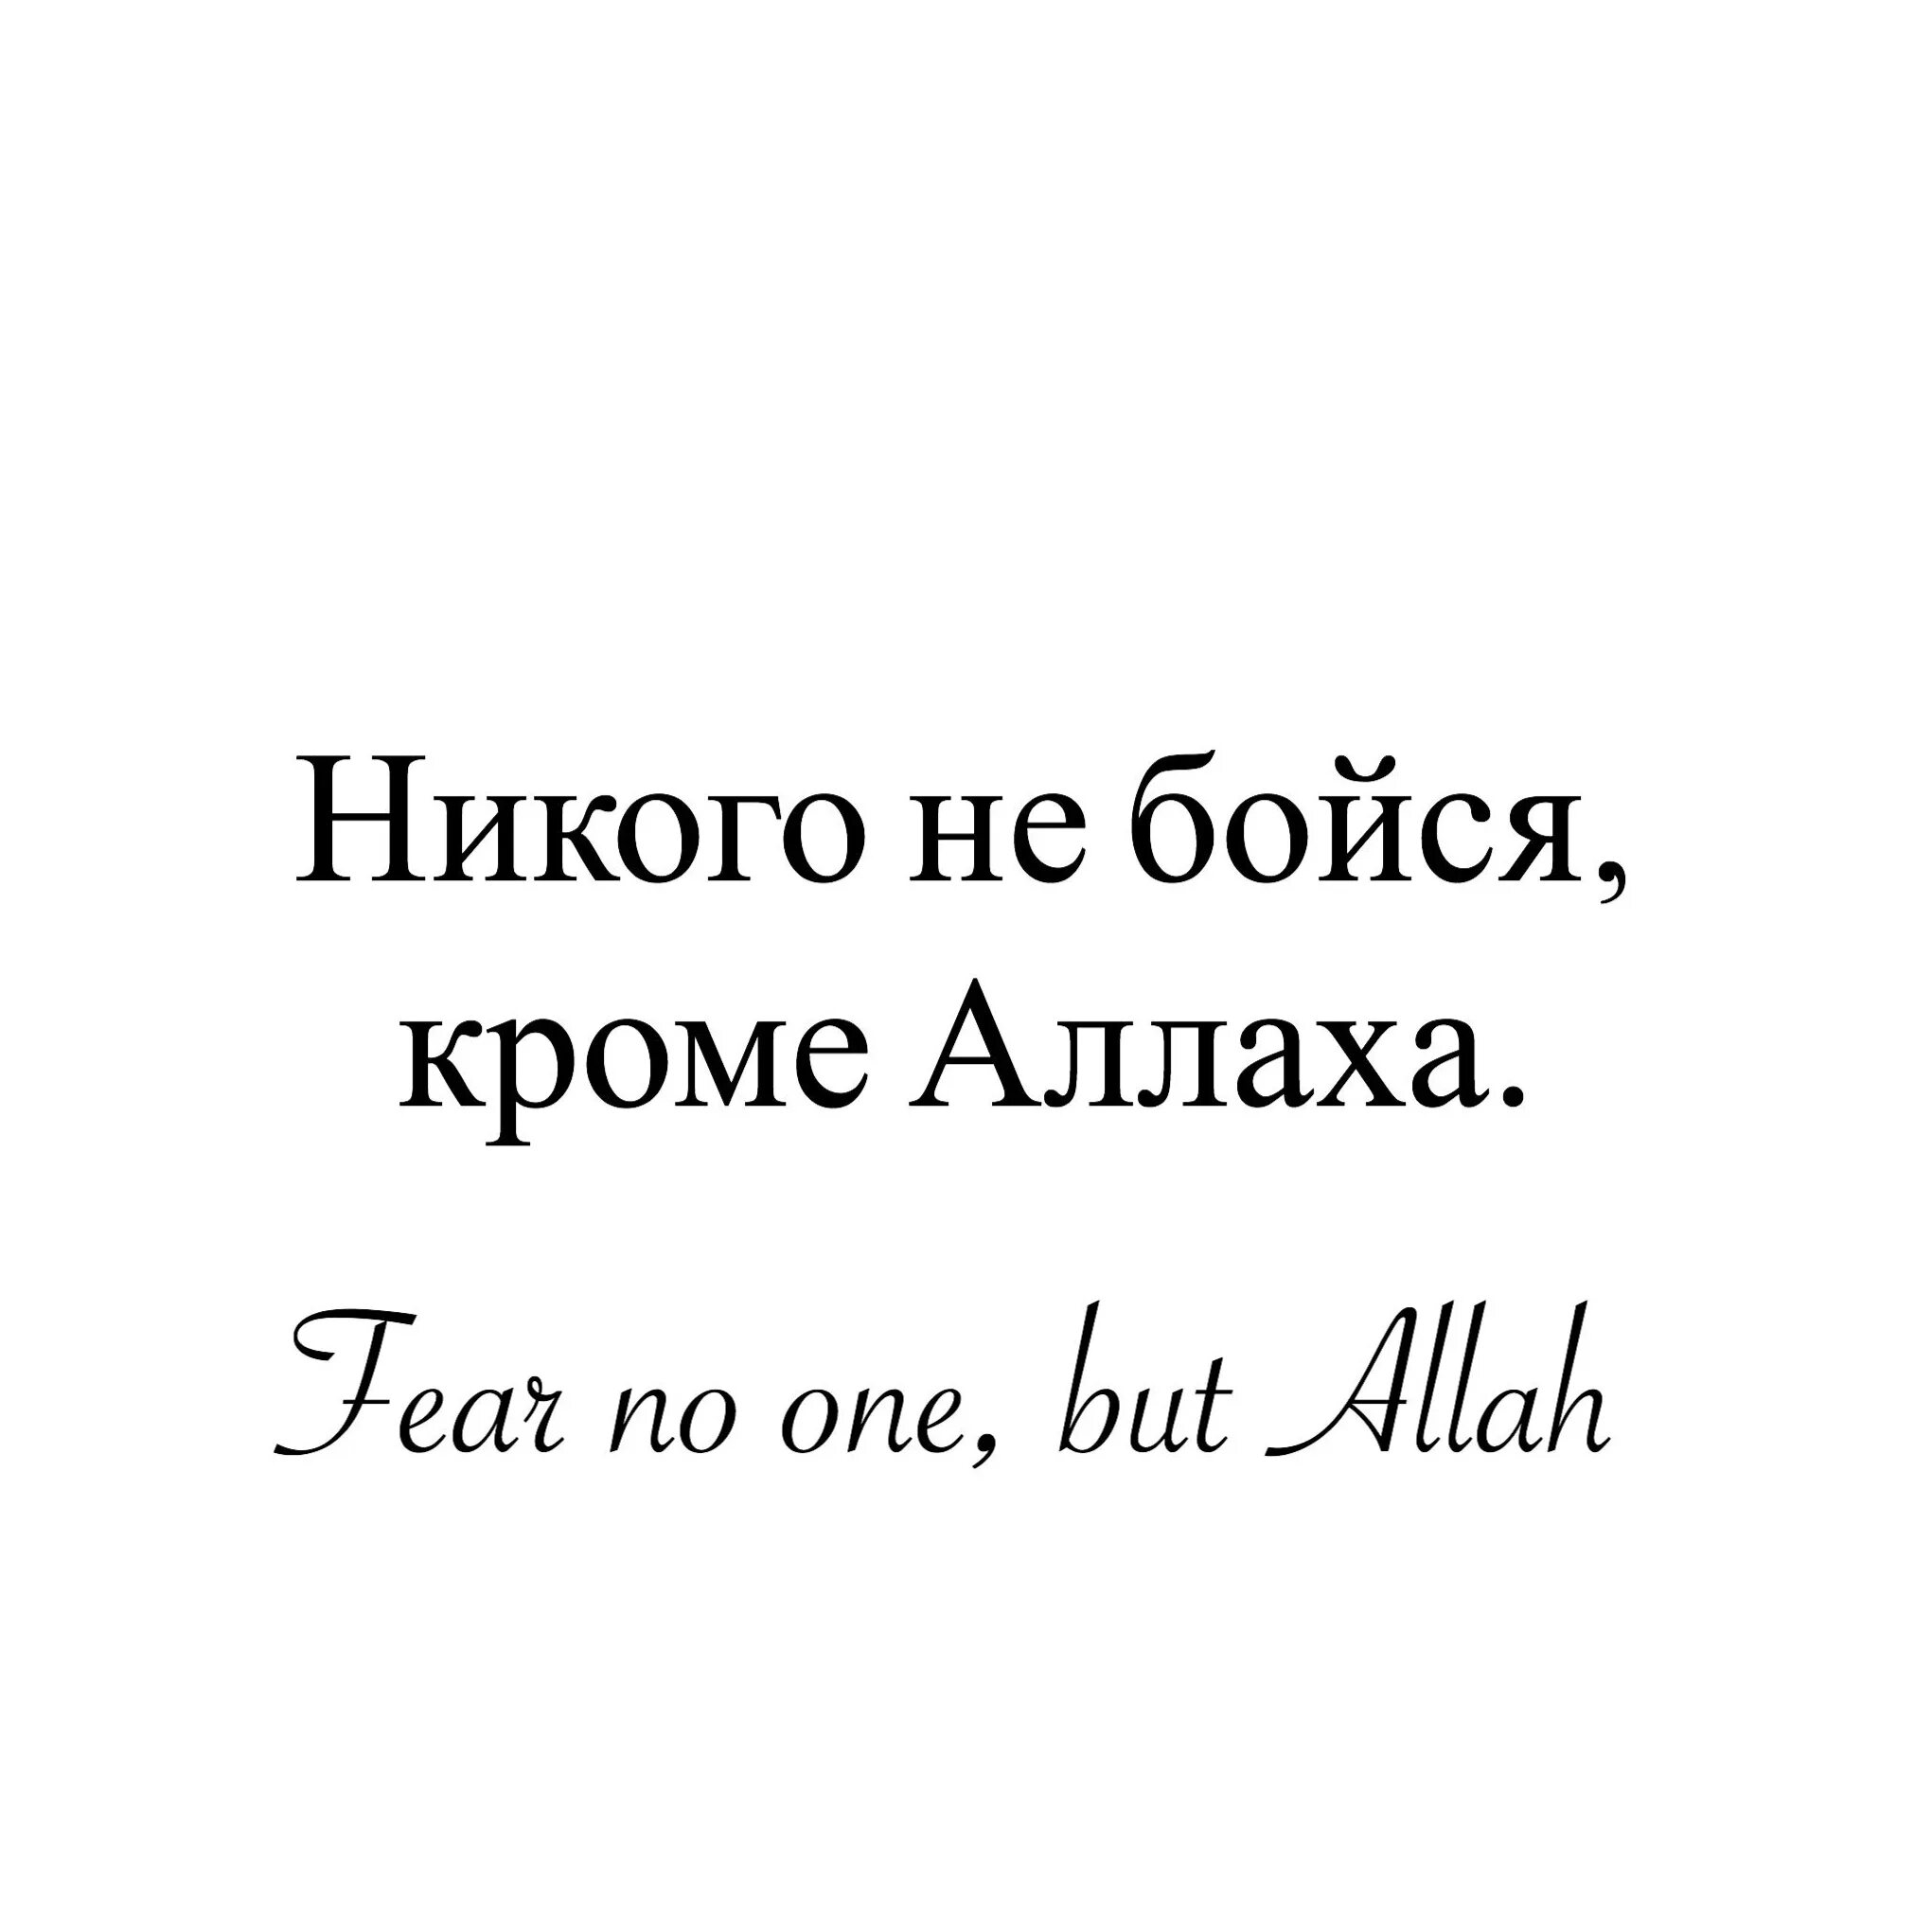 Бойтесь всевышнего. Не бойся никого кроме Аллаха. Я никого не боюсь кроме Аллаха. Я не боюсь кроме Аллаха. Бойся Аллаха.